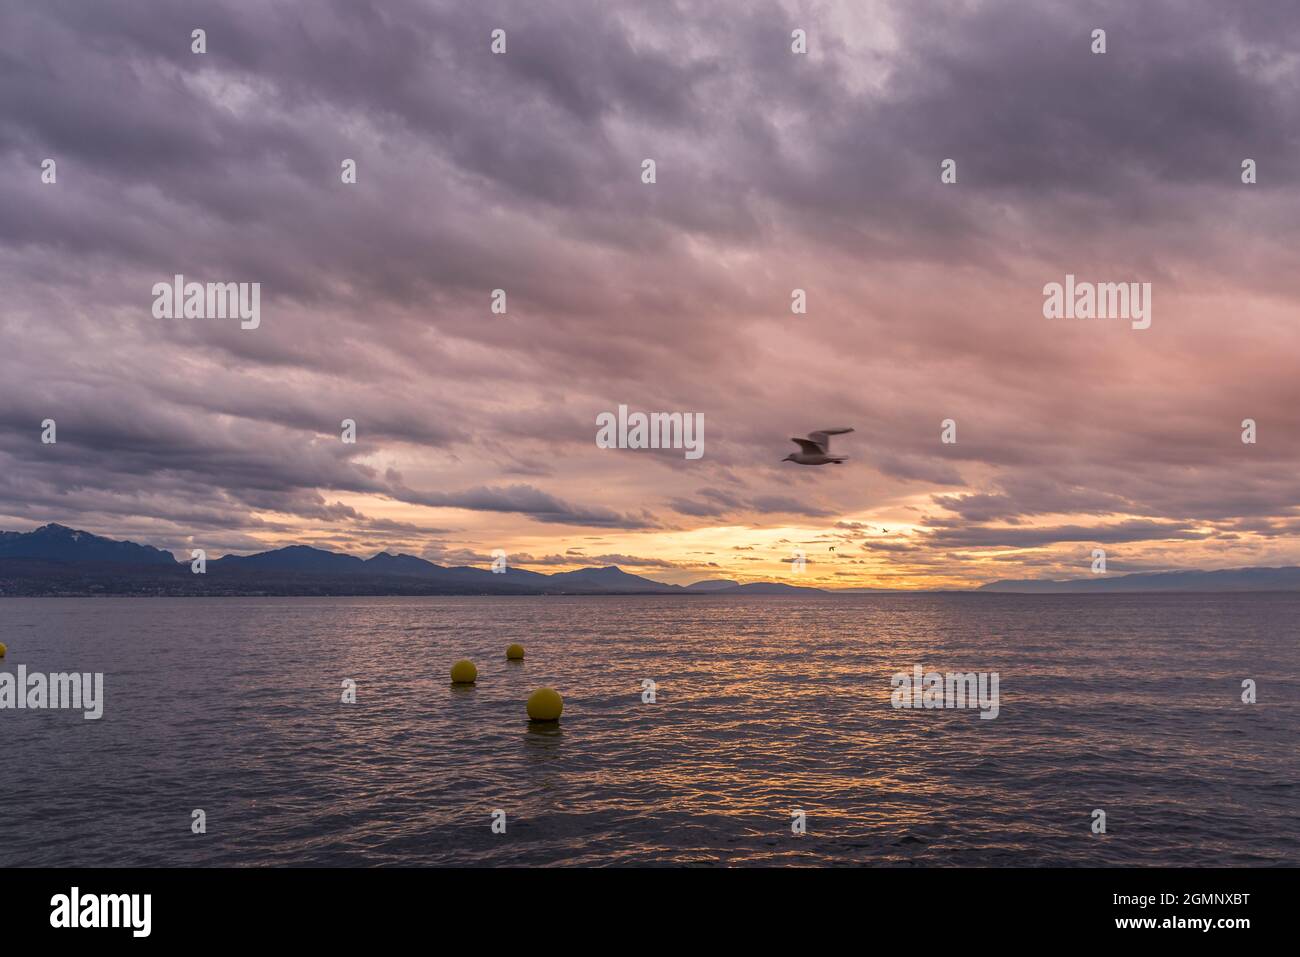 Un paysage marin au coucher du soleil avec des bouées dans l'eau et un mouette en vol. Concept de paysage marin. Banque D'Images